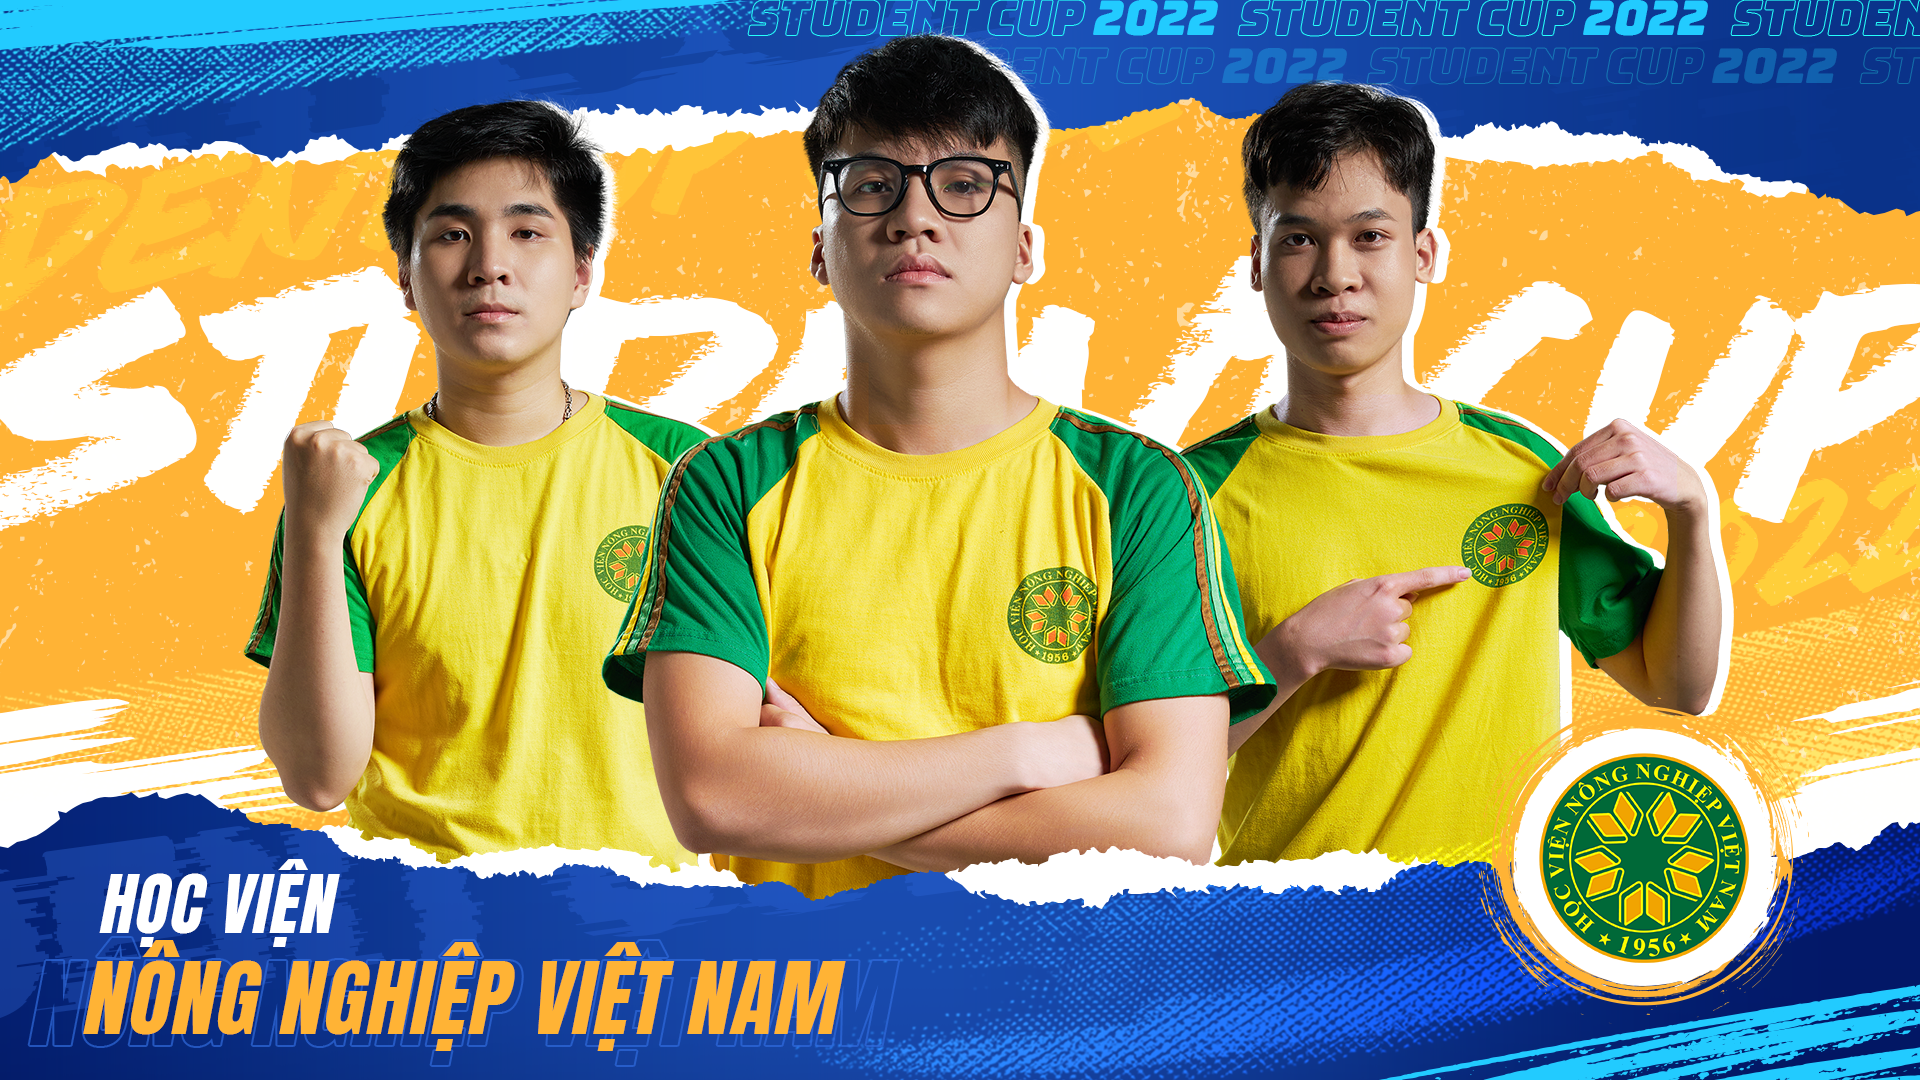 Top 8 mạnh nhất lộ diện, bùng nổ giải đấu FIFA Online 4 hàng đầu dành cho sinh viên Việt Nam - ảnh 8